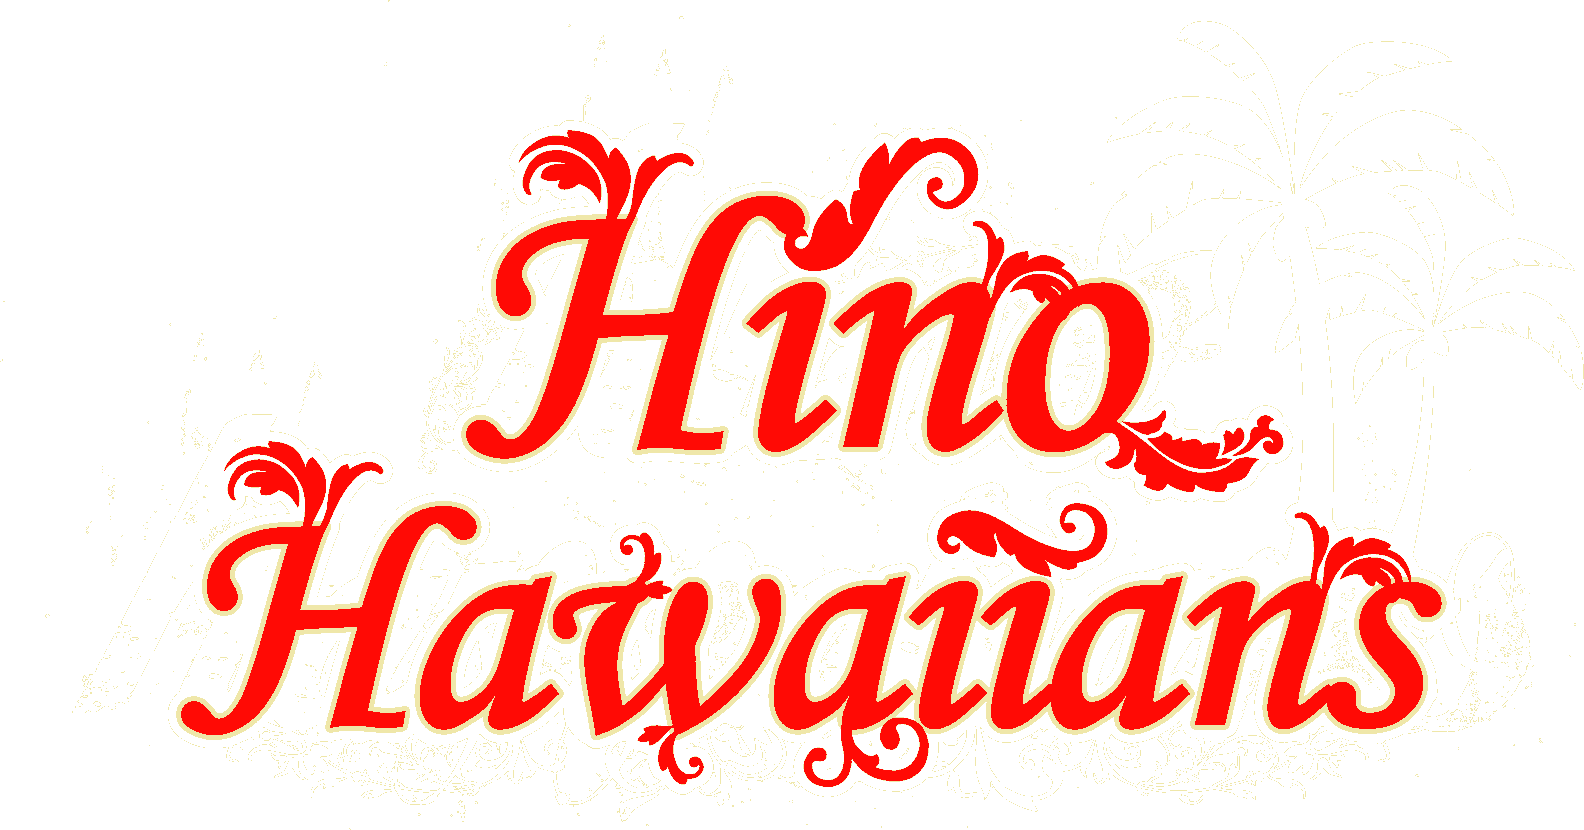 ヒノハワイアンズ | HINO HAWAIIANS OFFICIAL